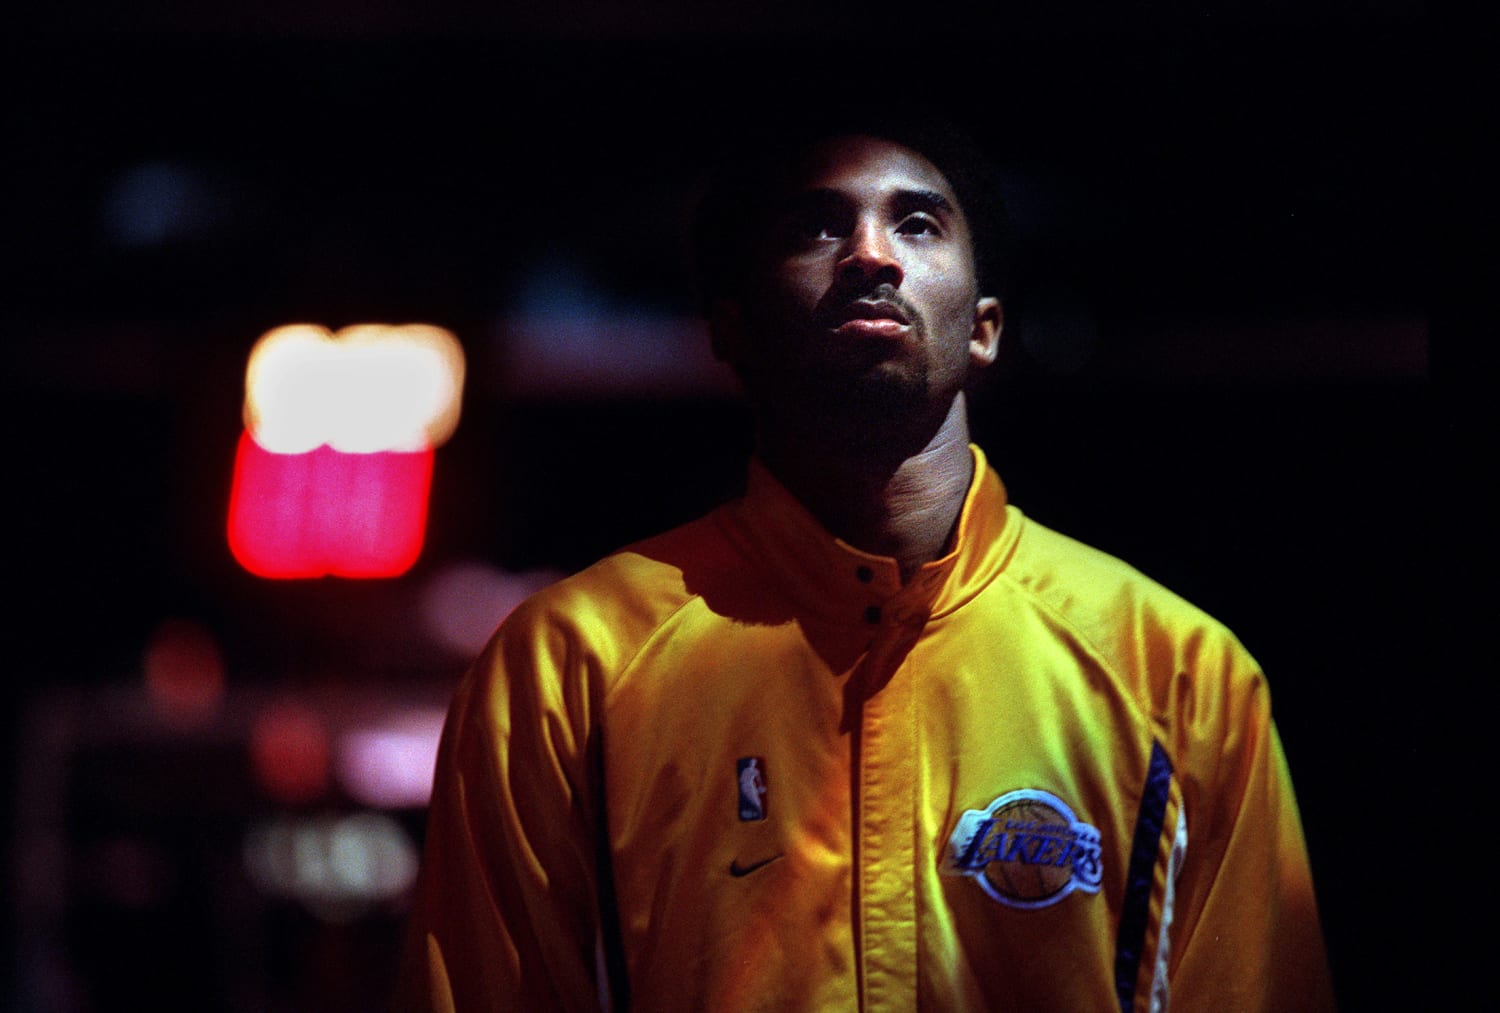 The Bridge Between Michael Jordan and LeBron James: Kobe Bryant